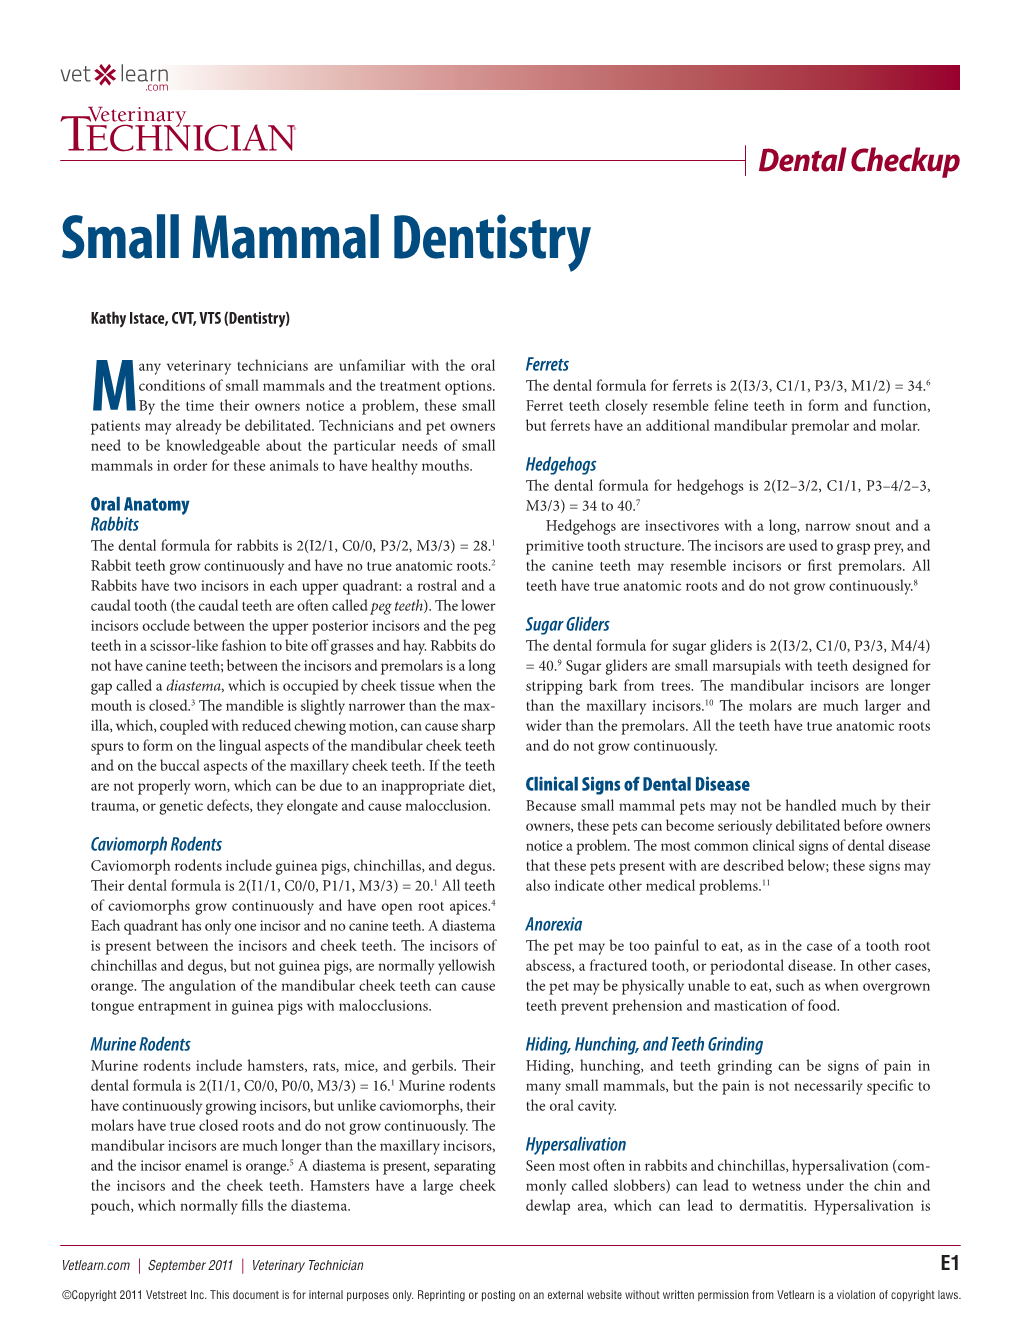 Small Mammal Dentistry